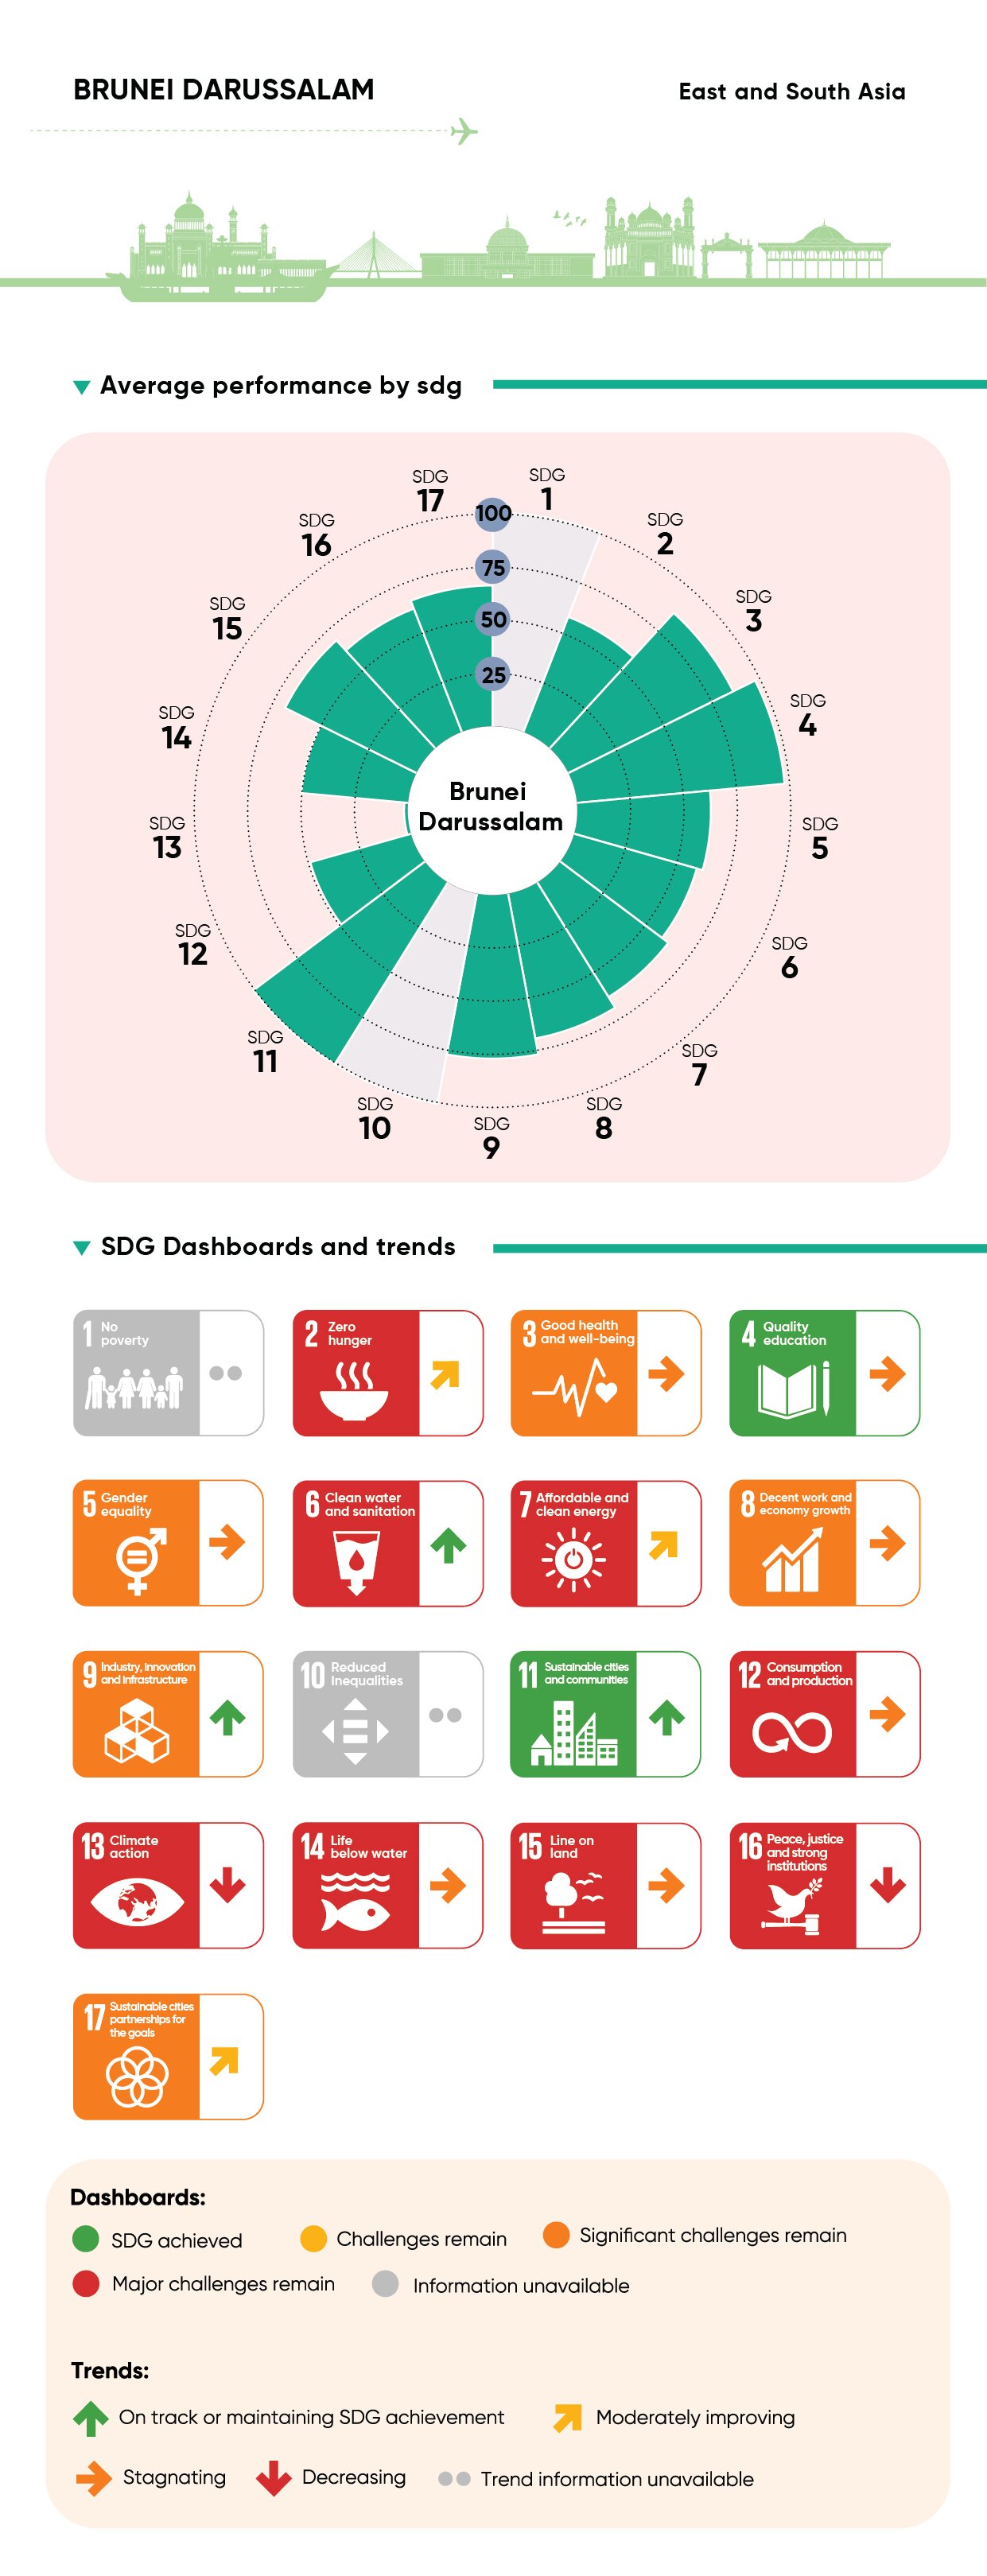 Infographic: https://dashboards.sdgindex.org/profiles/brunei-darussalam